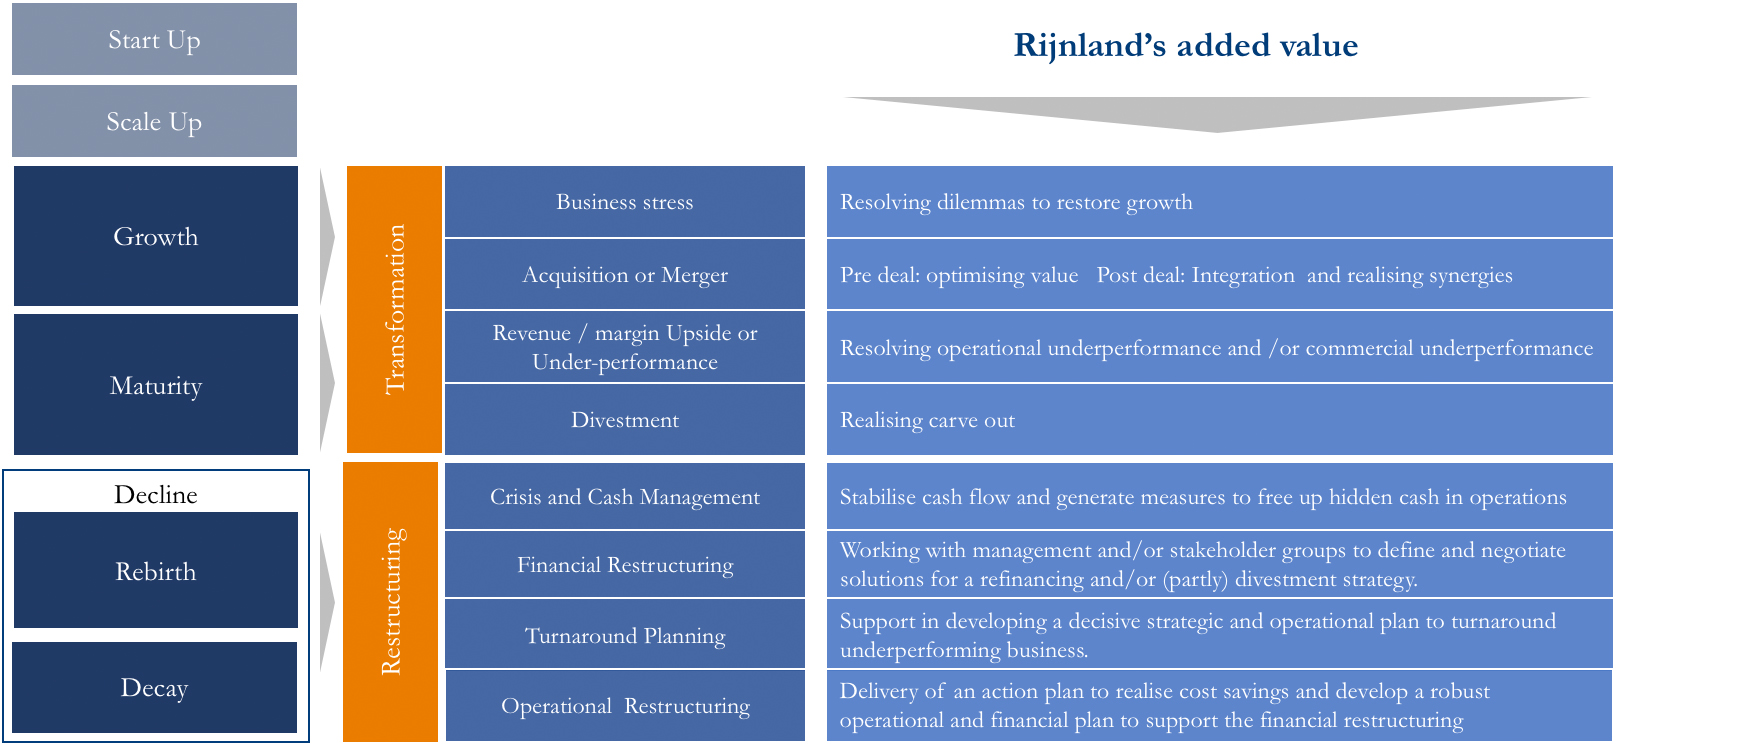 rijnland-added-value-en